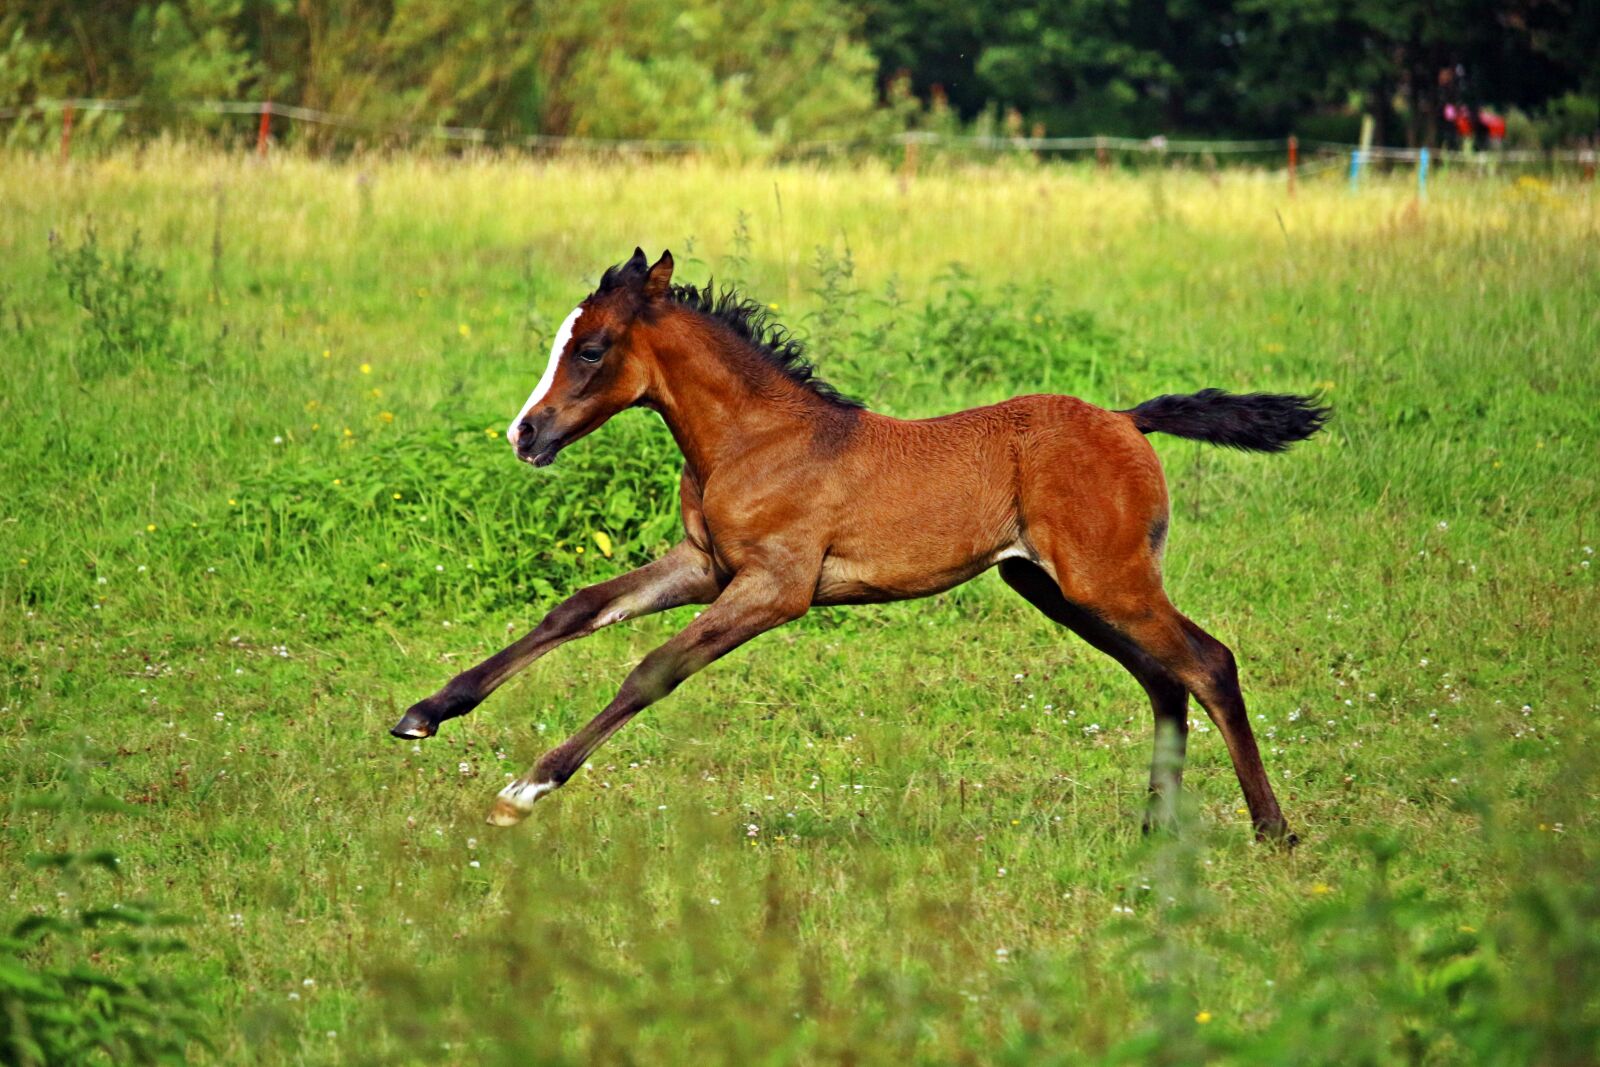 Canon EOS 100D (EOS Rebel SL1 / EOS Kiss X7) sample photo. Horse, gallop, foal photography